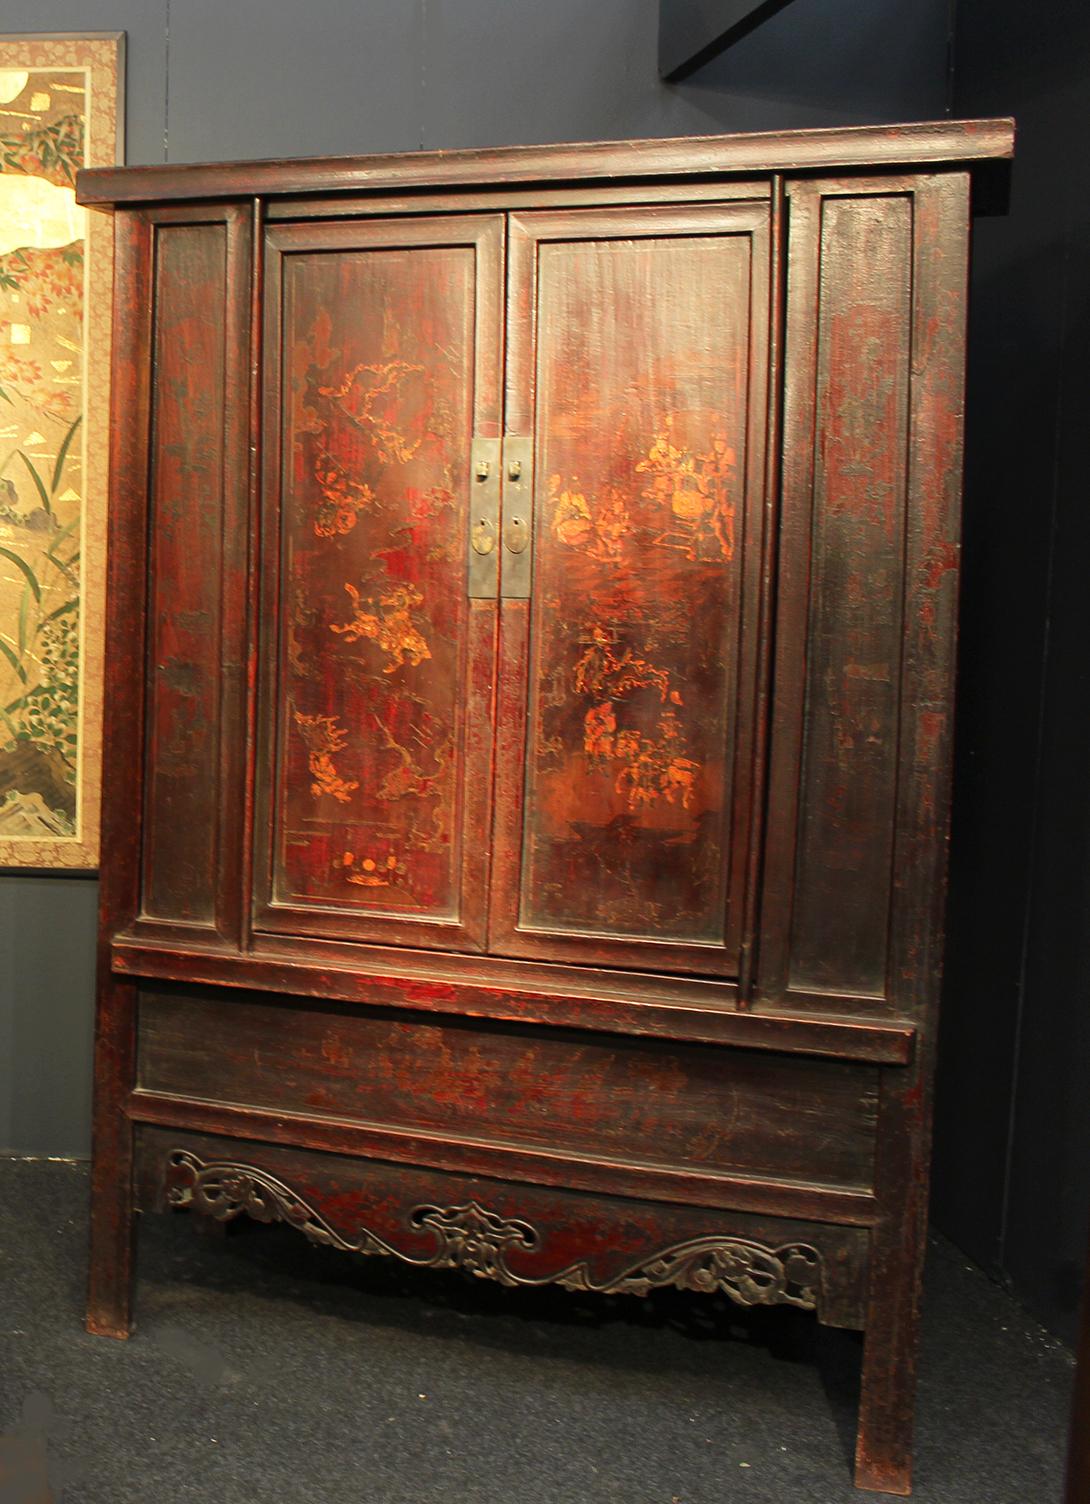 Ein schönes und seltenes Paar Bücherregalmöbel aus der Qing-Dynastie des 18. Jahrhunderts aus feinem chinesischen Ulmenholz.
Jedes robuste Möbelstück hat eine originelle dicke Lackierung und eine leicht trapezförmige Form.
Die Silhouette zeigt